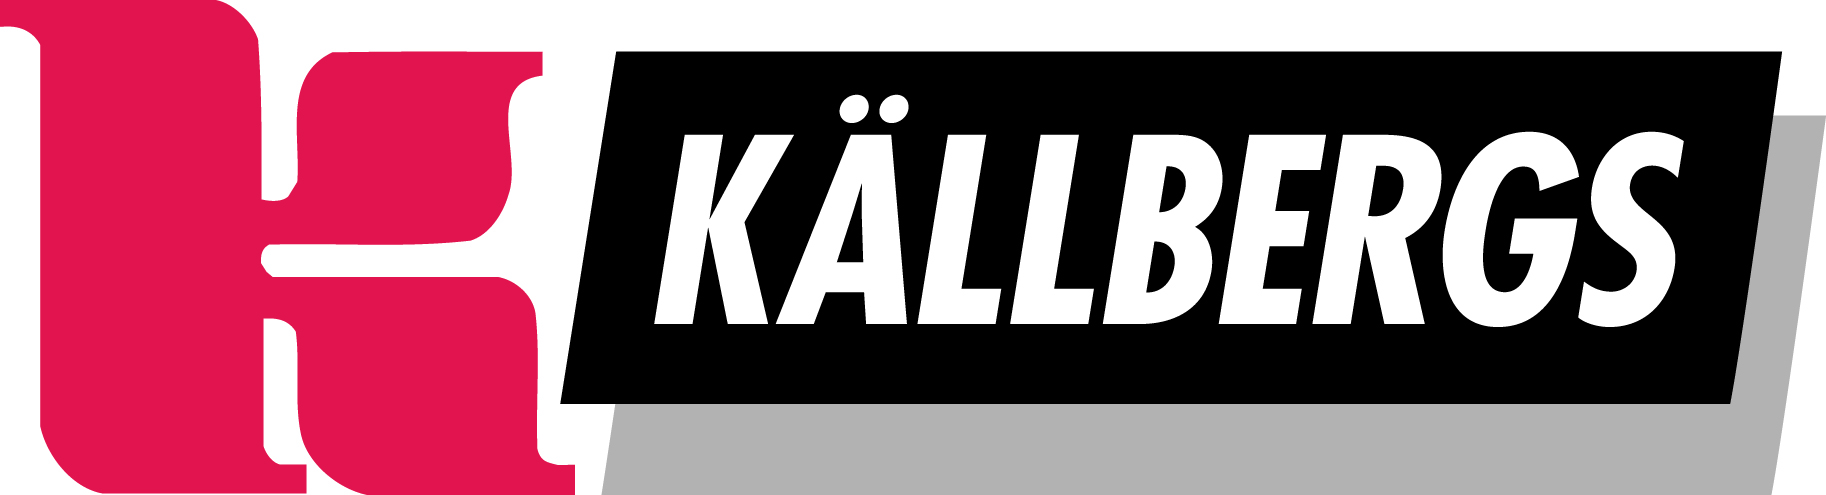 About Källbergs